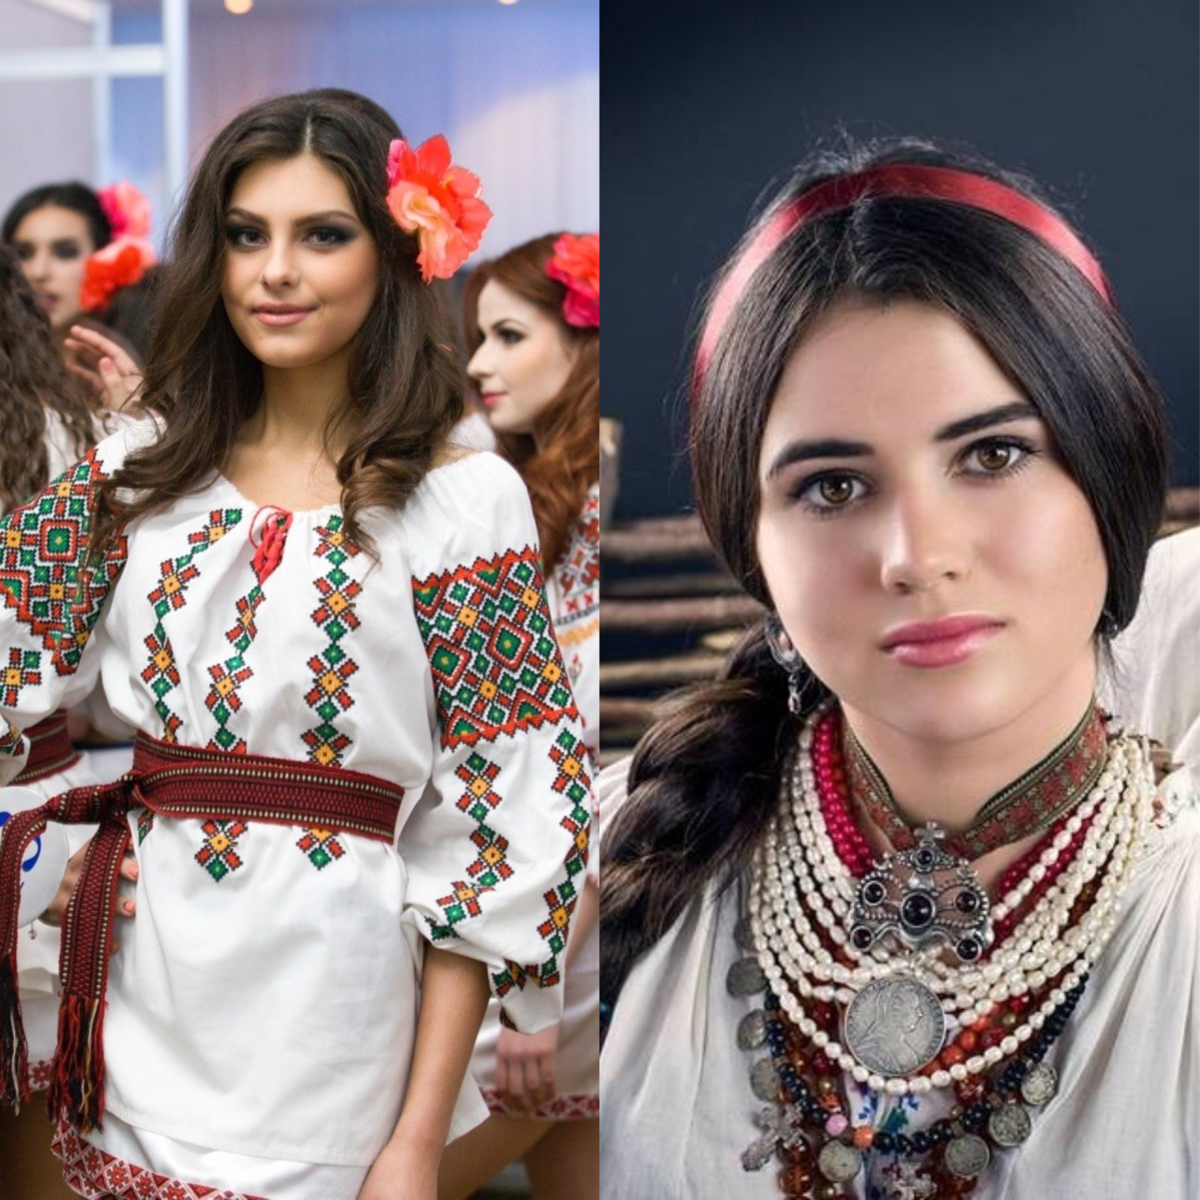 Молдован внешность молдаван. Болгары раса. Румыны и болгары. Румыны фото